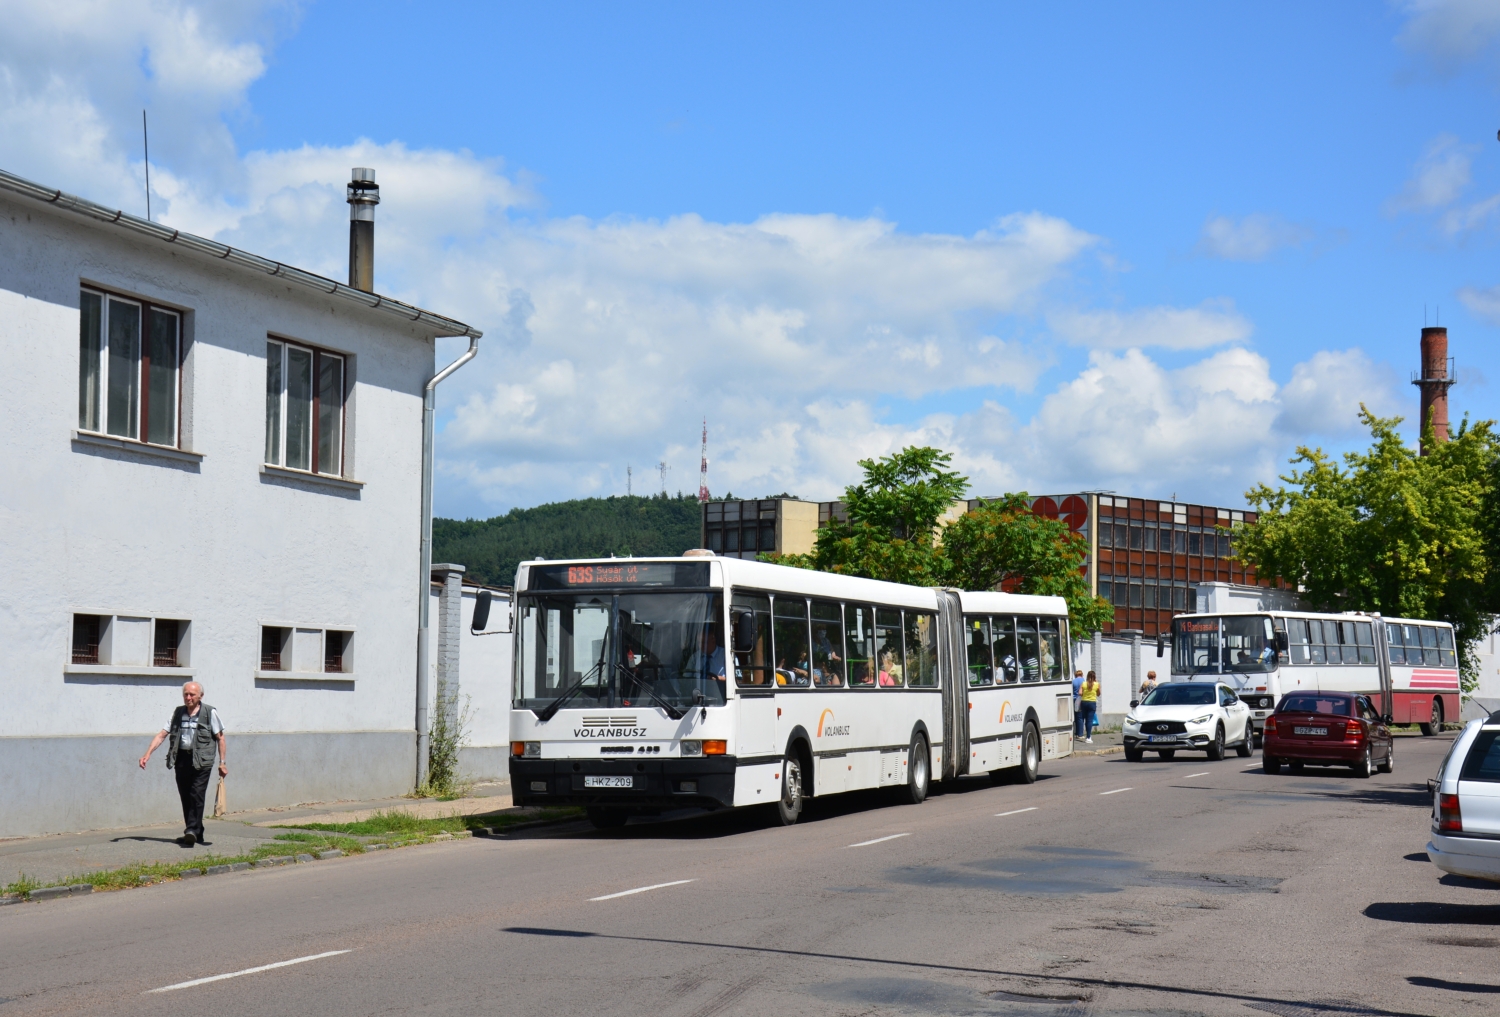 Poslední autobus Ikarus 435 dojezdil v Maďarsku dne 26. 7. 2023 ve městě Salgótarján, kde jej o tři roky dříve (7. 7. 2020) zachytil fotograf. (foto: Jiří Drbal)